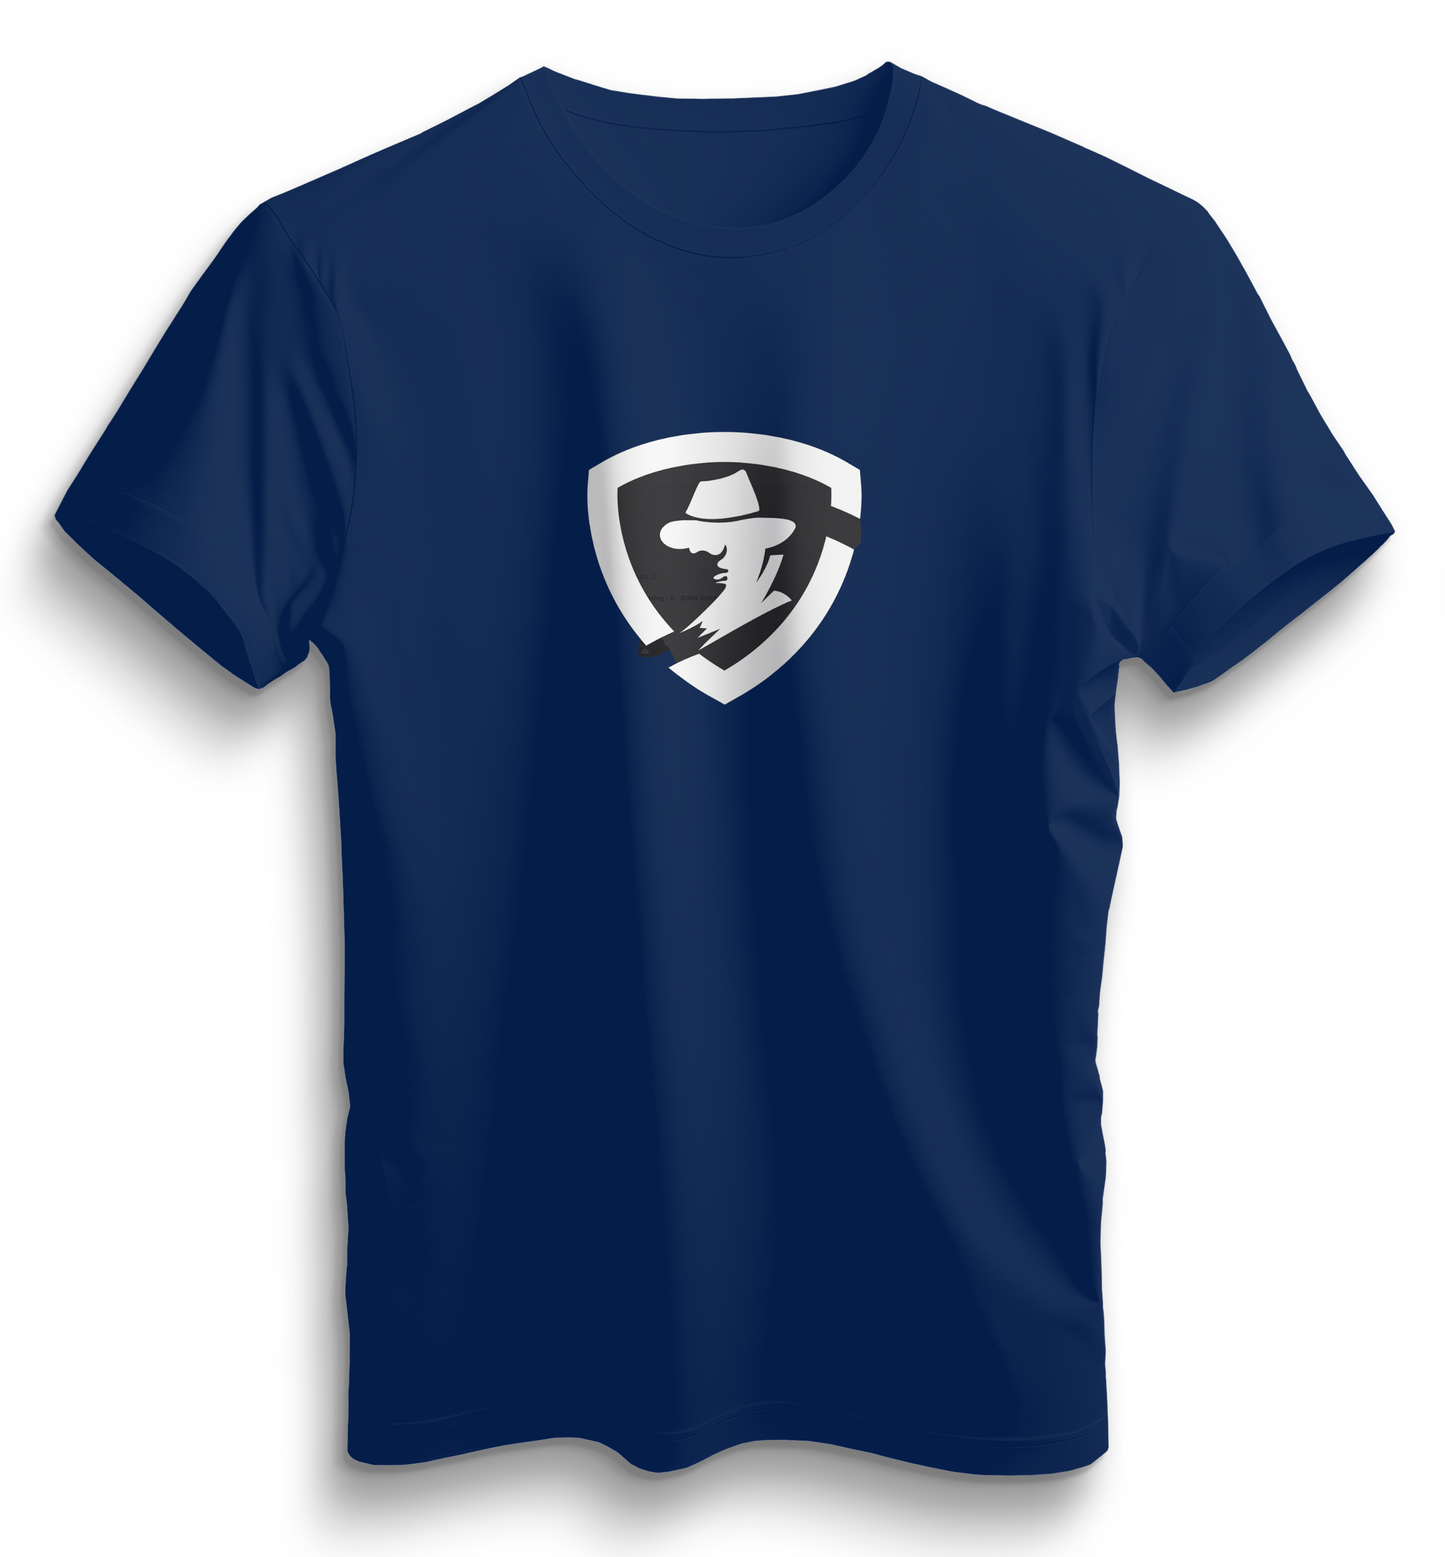 Urban Spy Shop Logo T-Shirt Short Sleeve